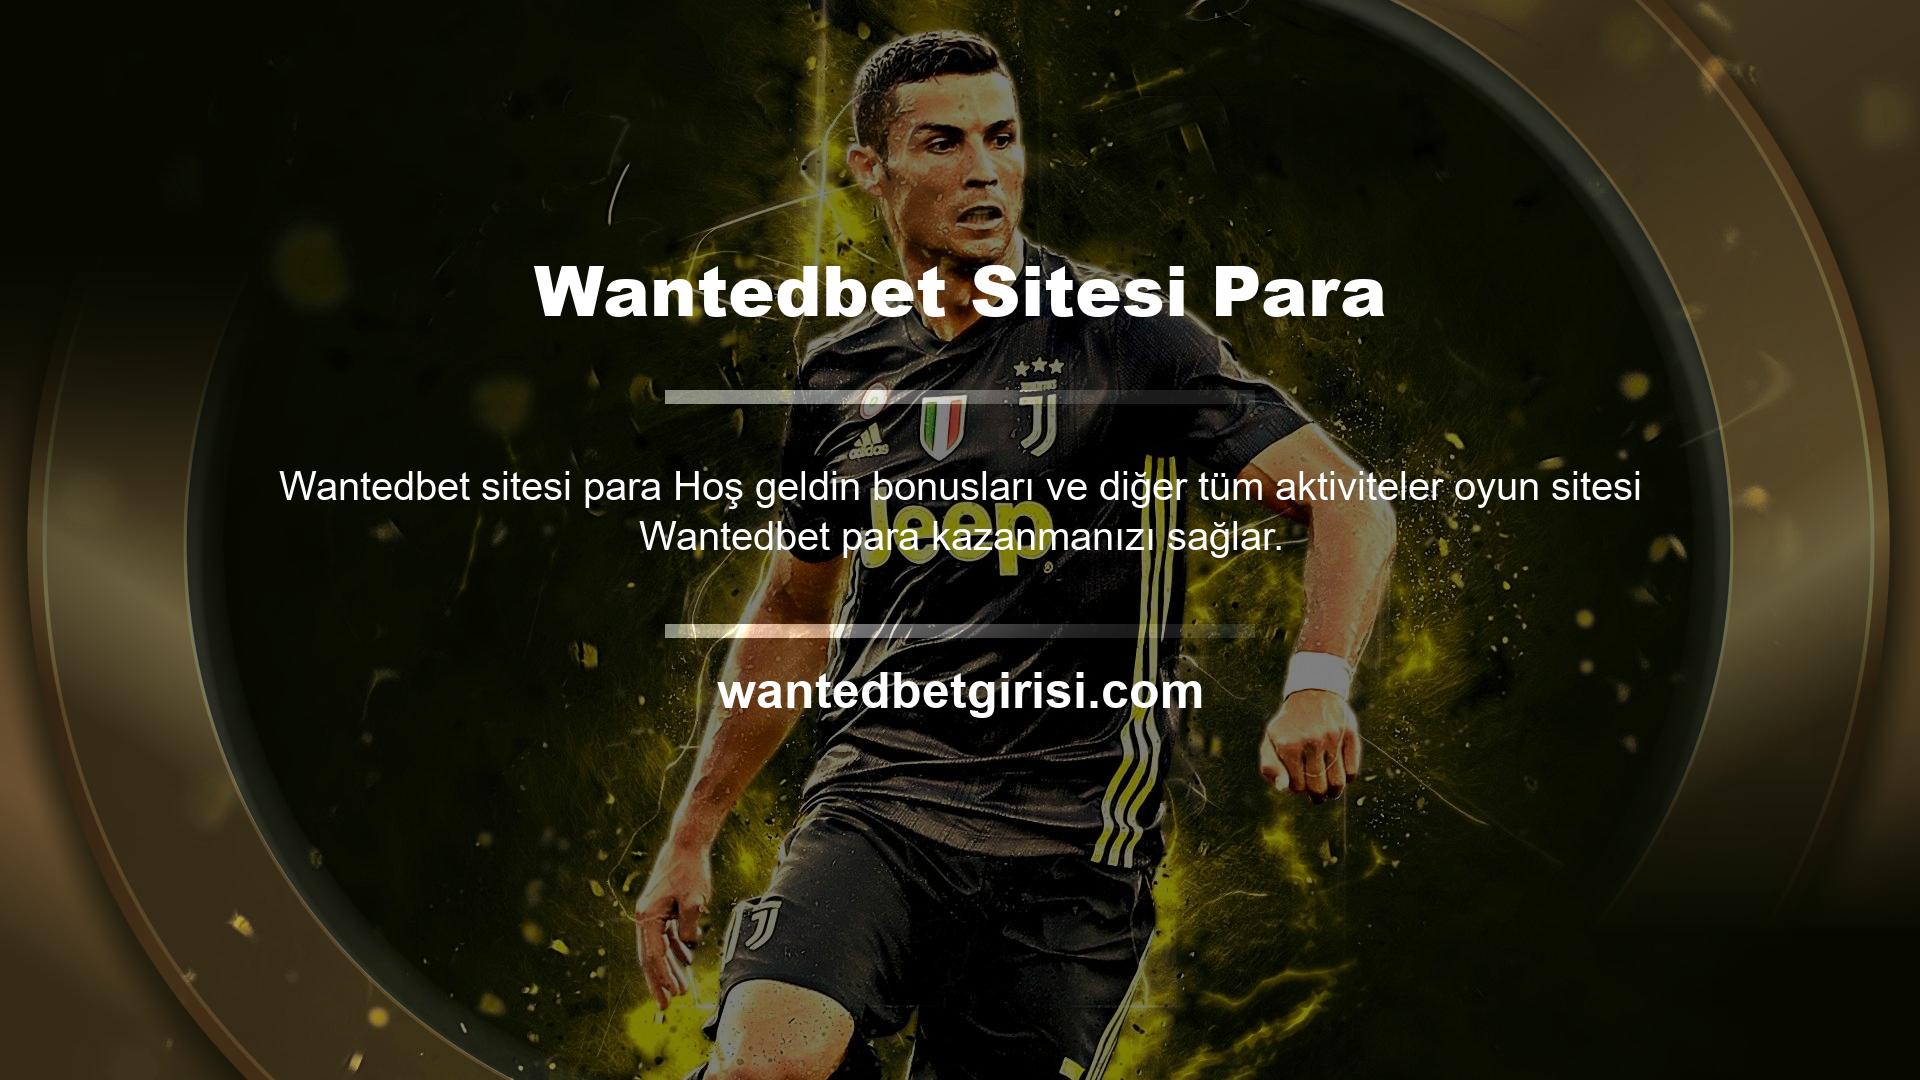 Wantedbet, tüm oyunlarını müşterileri için yeni bir adreste yayınlamaya başladı